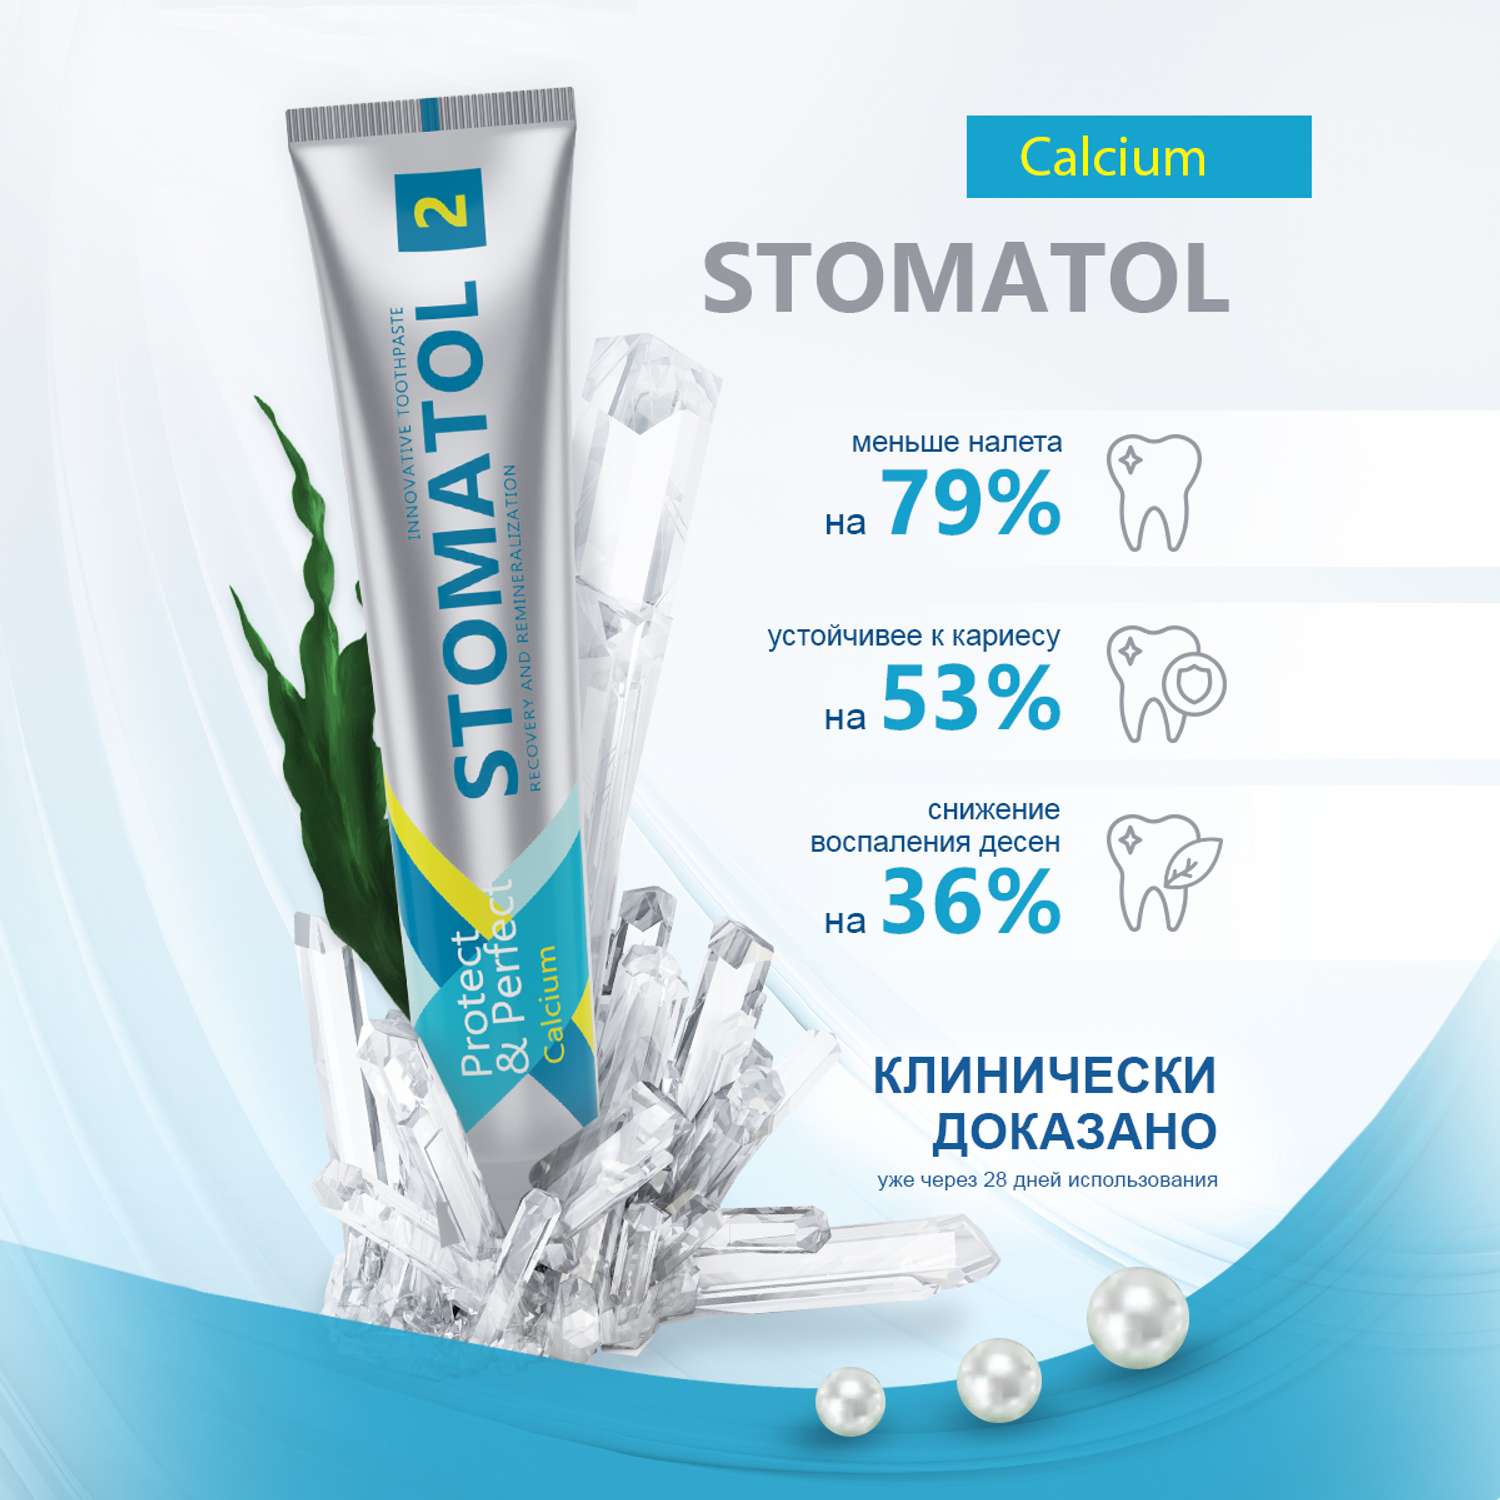 Паста зубная STOMATOL Calcium Профилактическая 100гр - фото 5